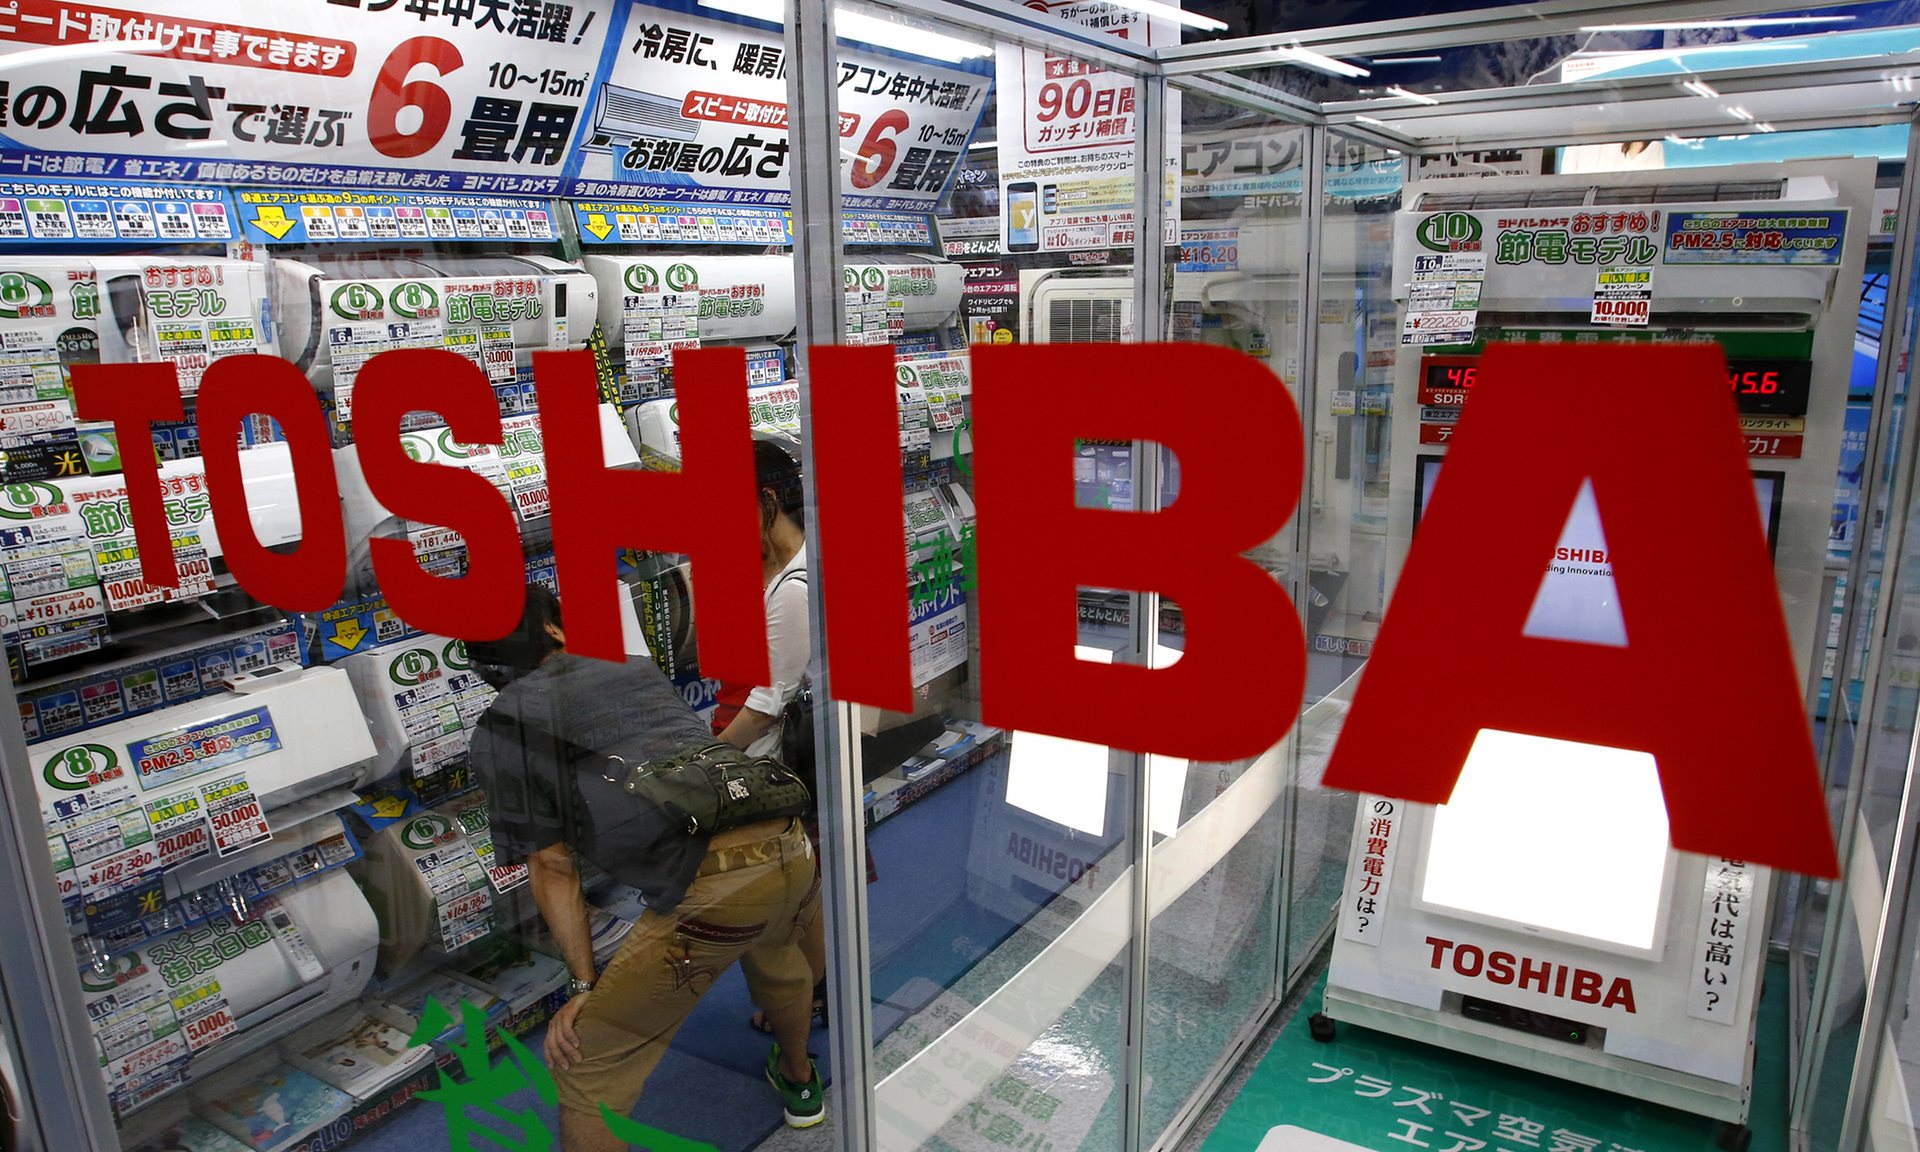 Toshiba hisseleri zorlu bir dönemden çıktı ve yükselişe geçti